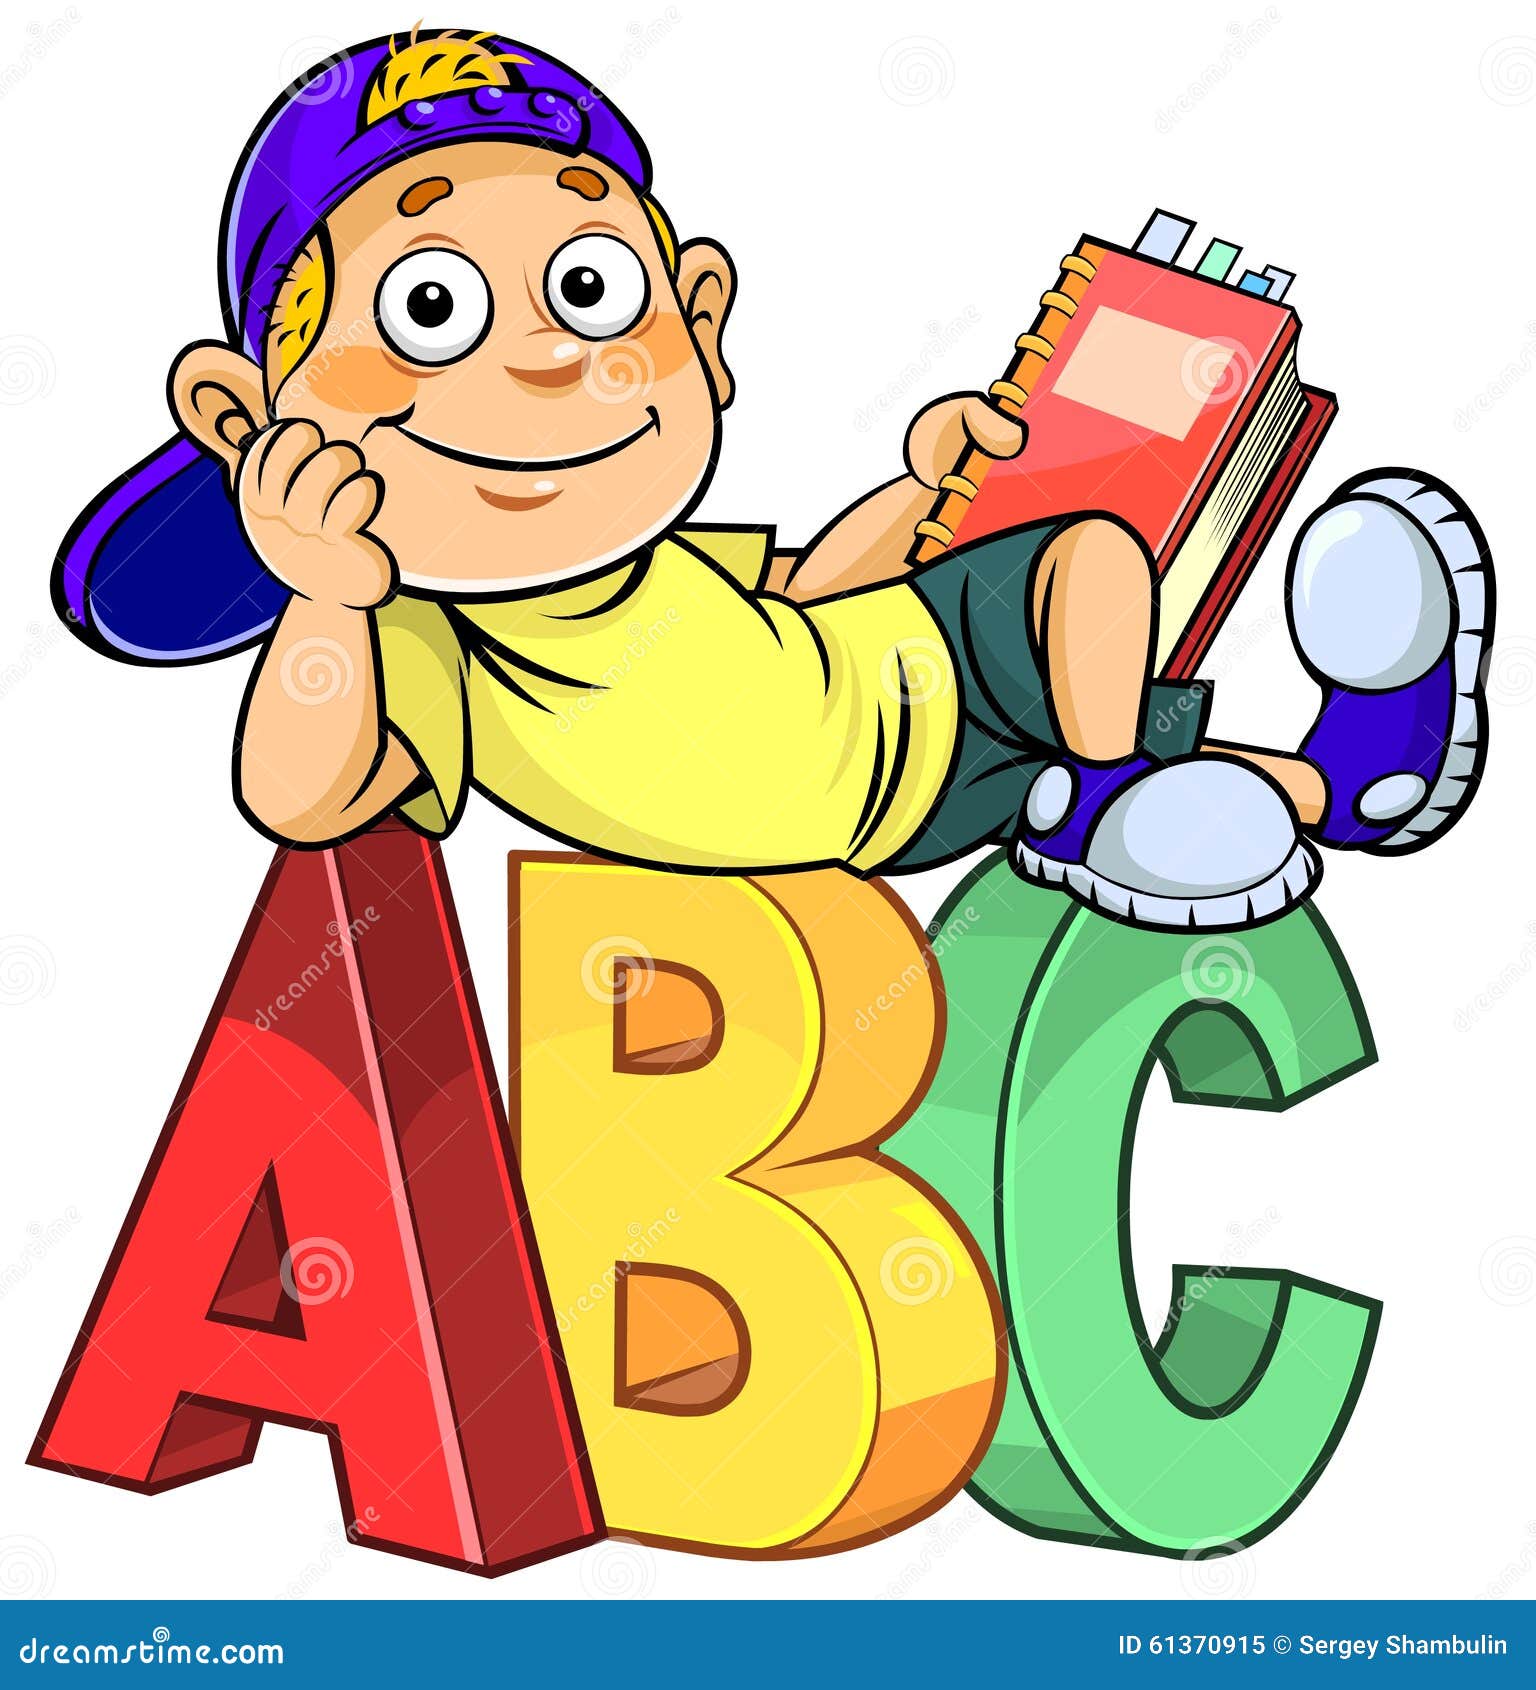 Cartoon kid on ABC stock vector. Illustration of cartoon - 61370915